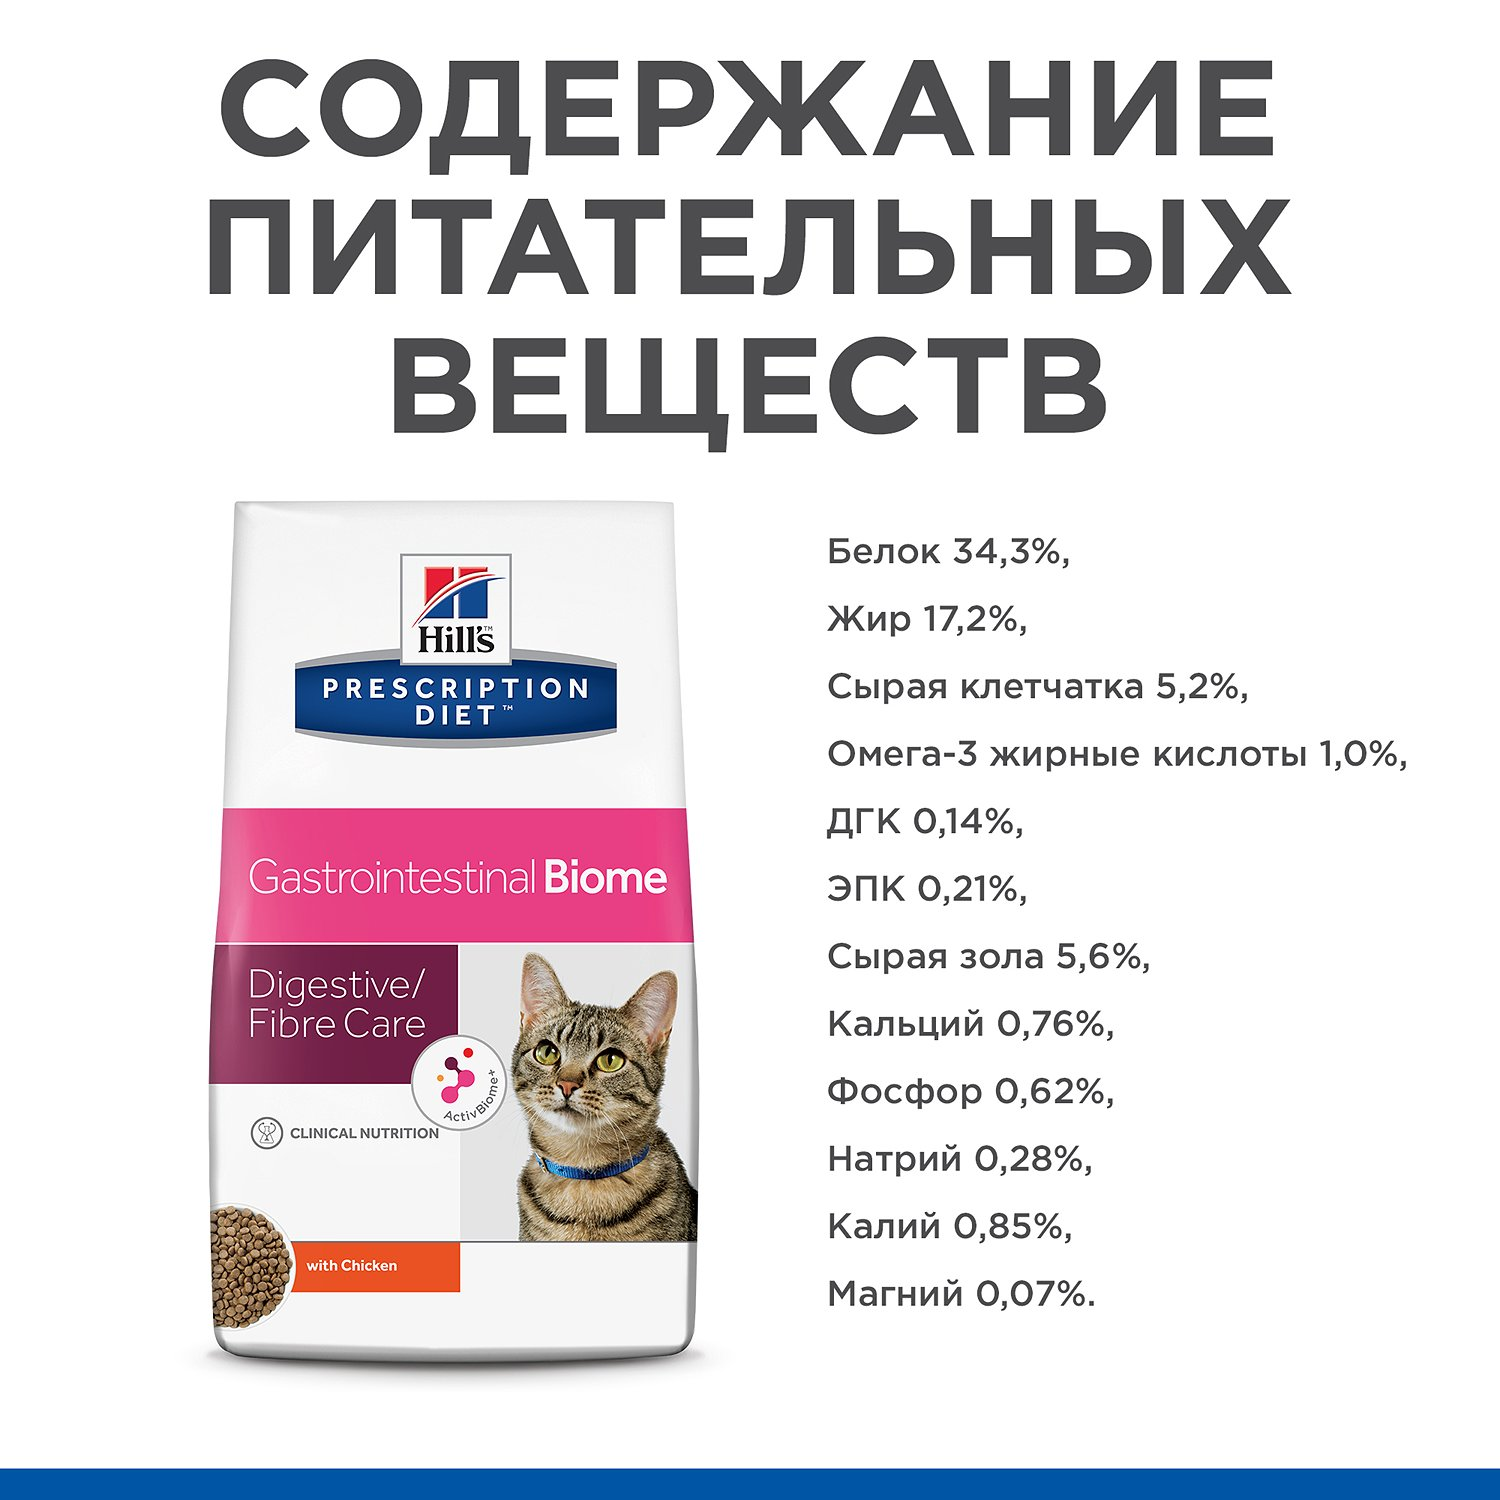 Лікувальний сухий корм для котів Hills Pescription Diet Gastrointestinal Biome - 6